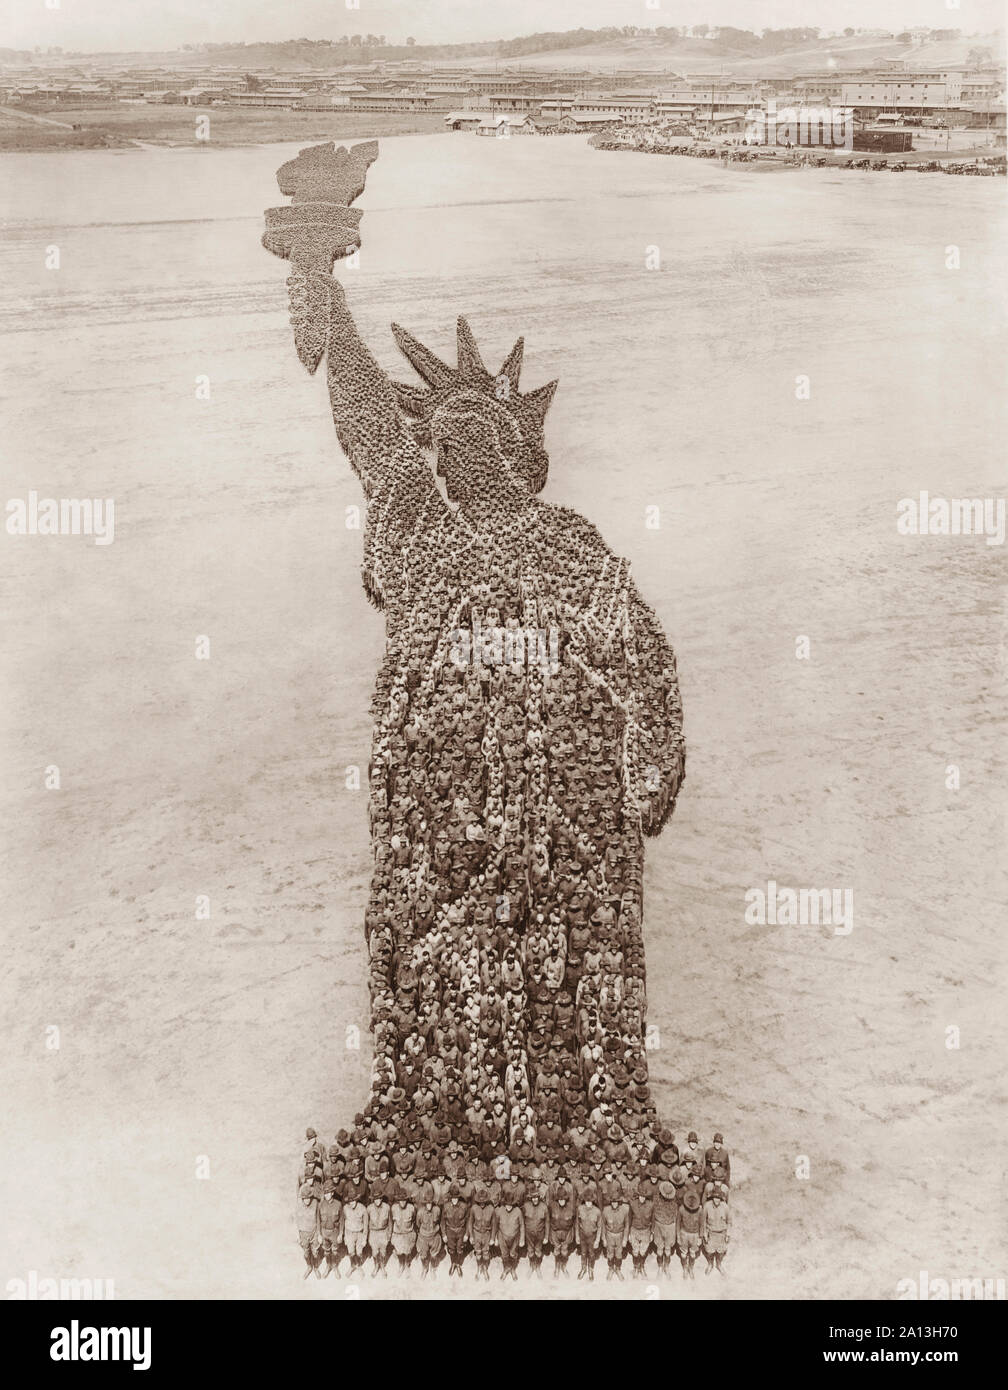 Une vue aérienne d'une formation de la Statue de la liberté composée par des membres de l'armée américaine et de la Marine. Banque D'Images